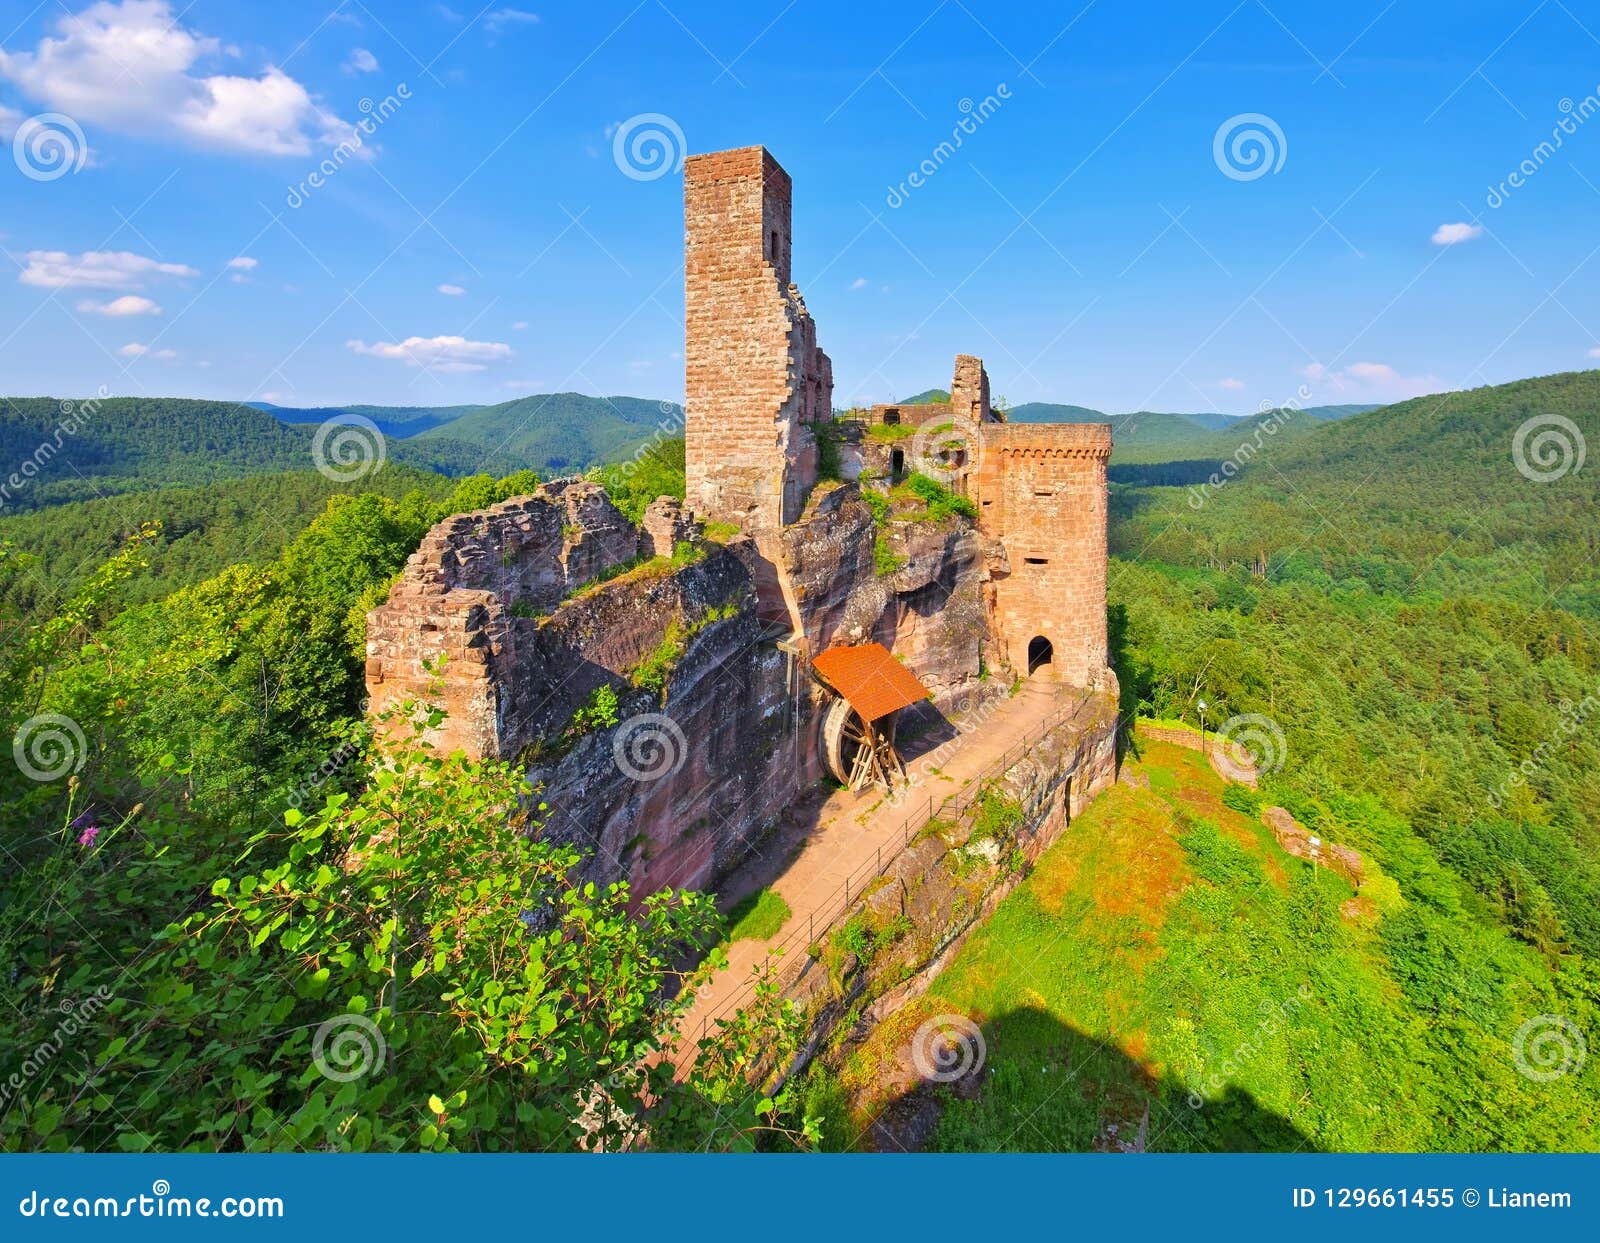 castle ruin drachenfels in dahn rockland, germany